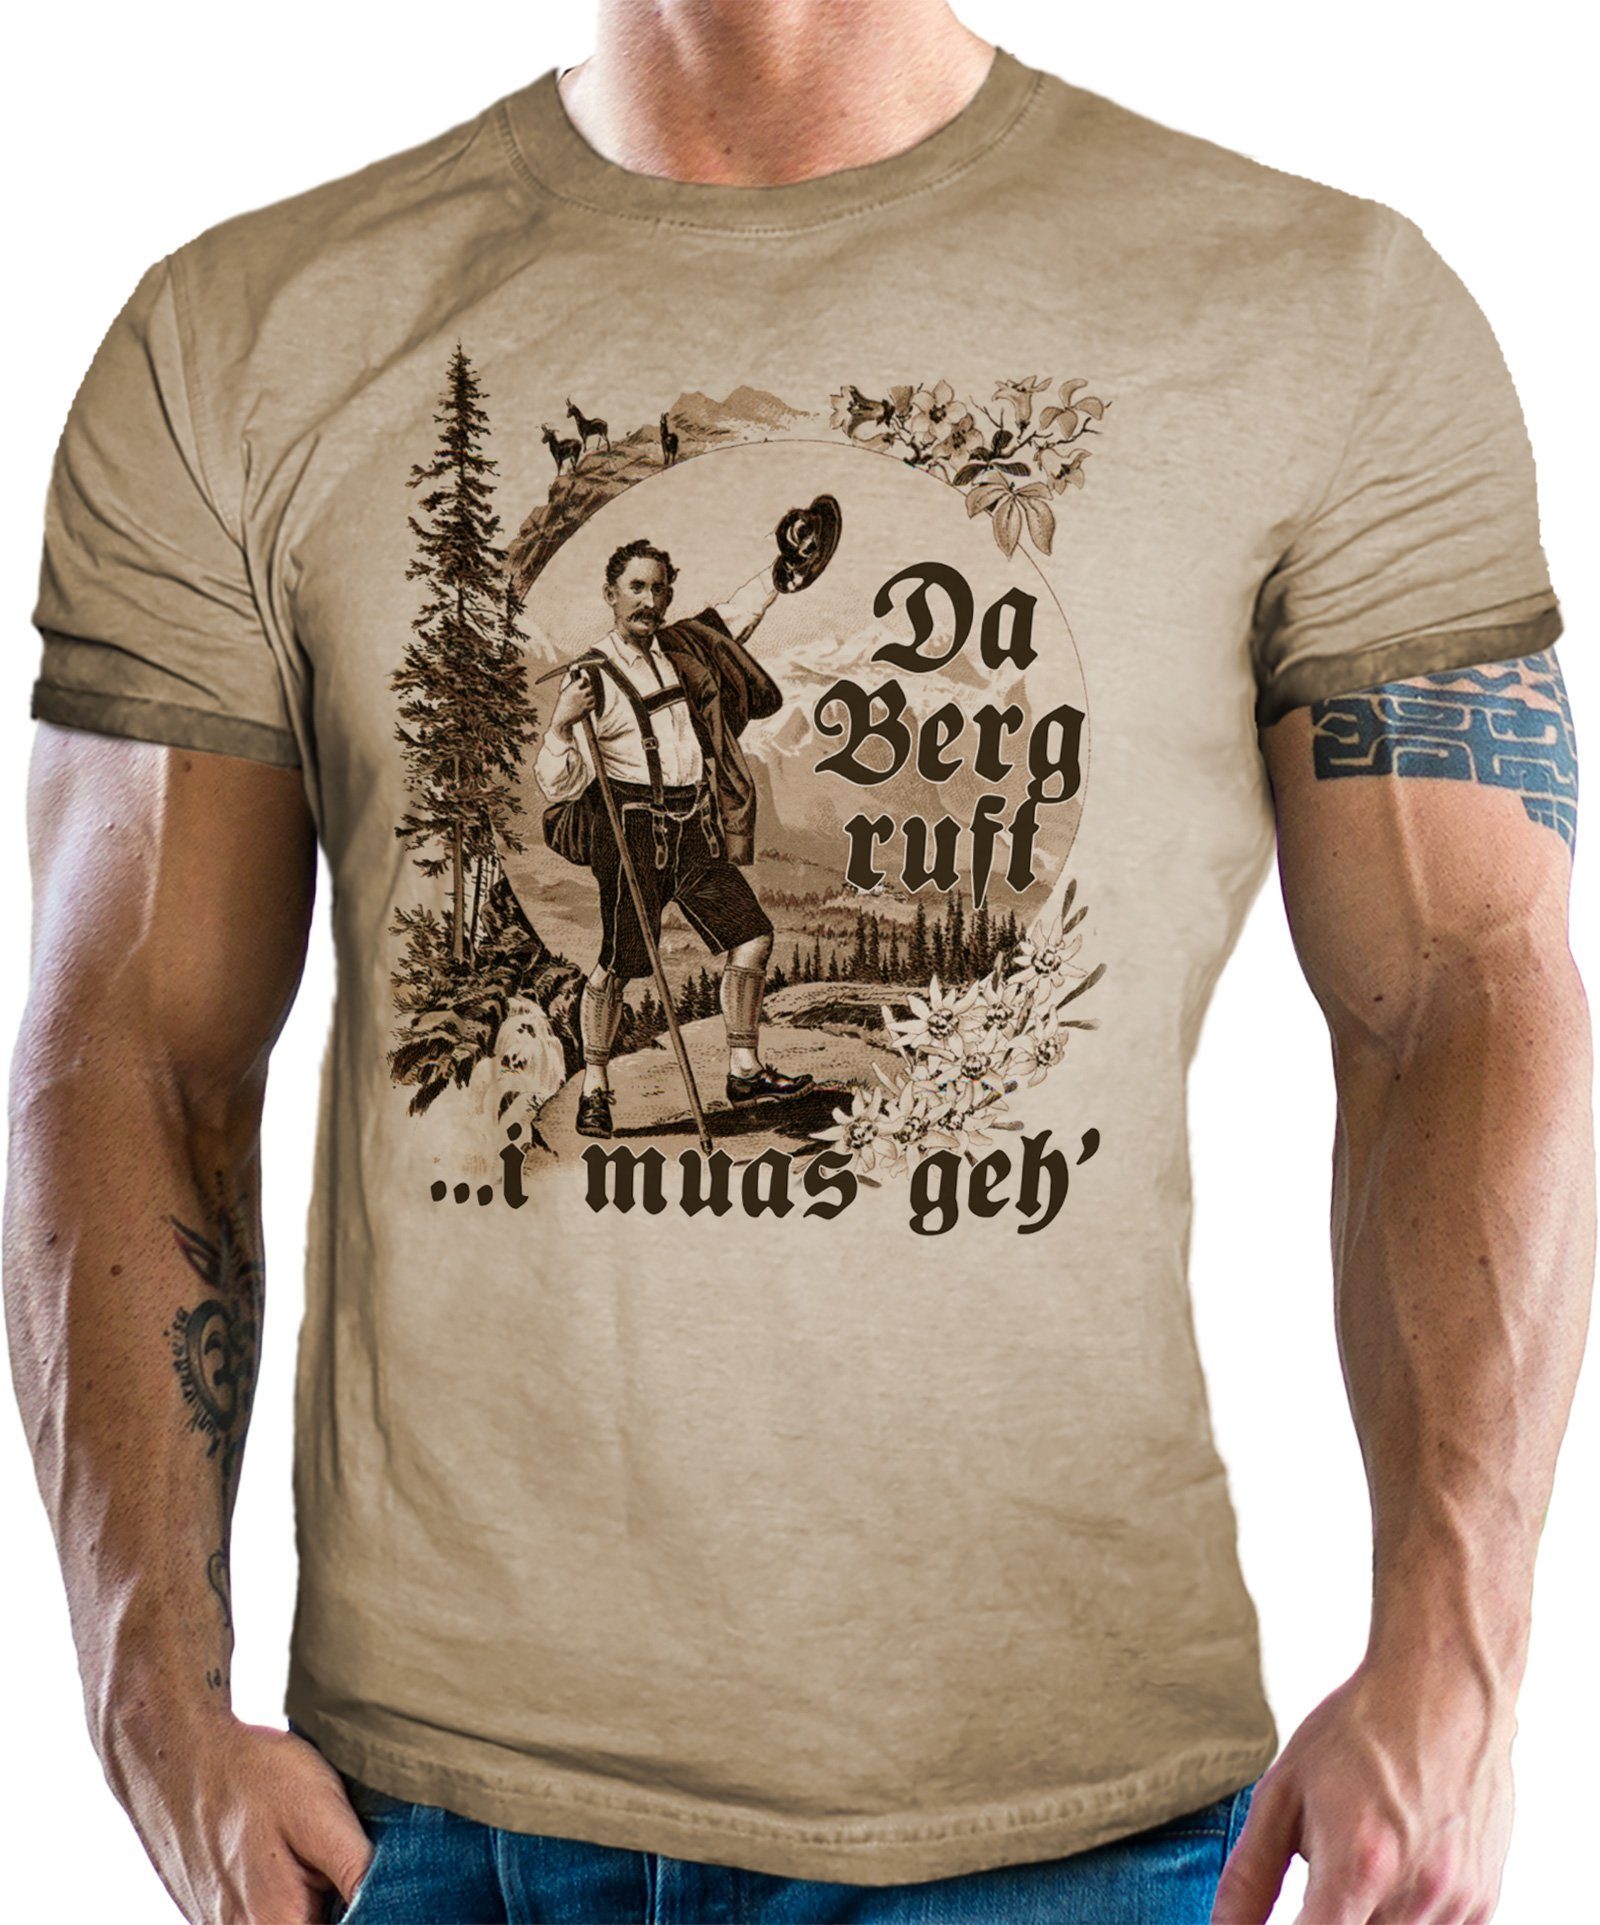 LOBO NEGRO® T-Shirt für Da Fans Berg Washed Look Trachten Bayern Retro Used - ruft Vintage